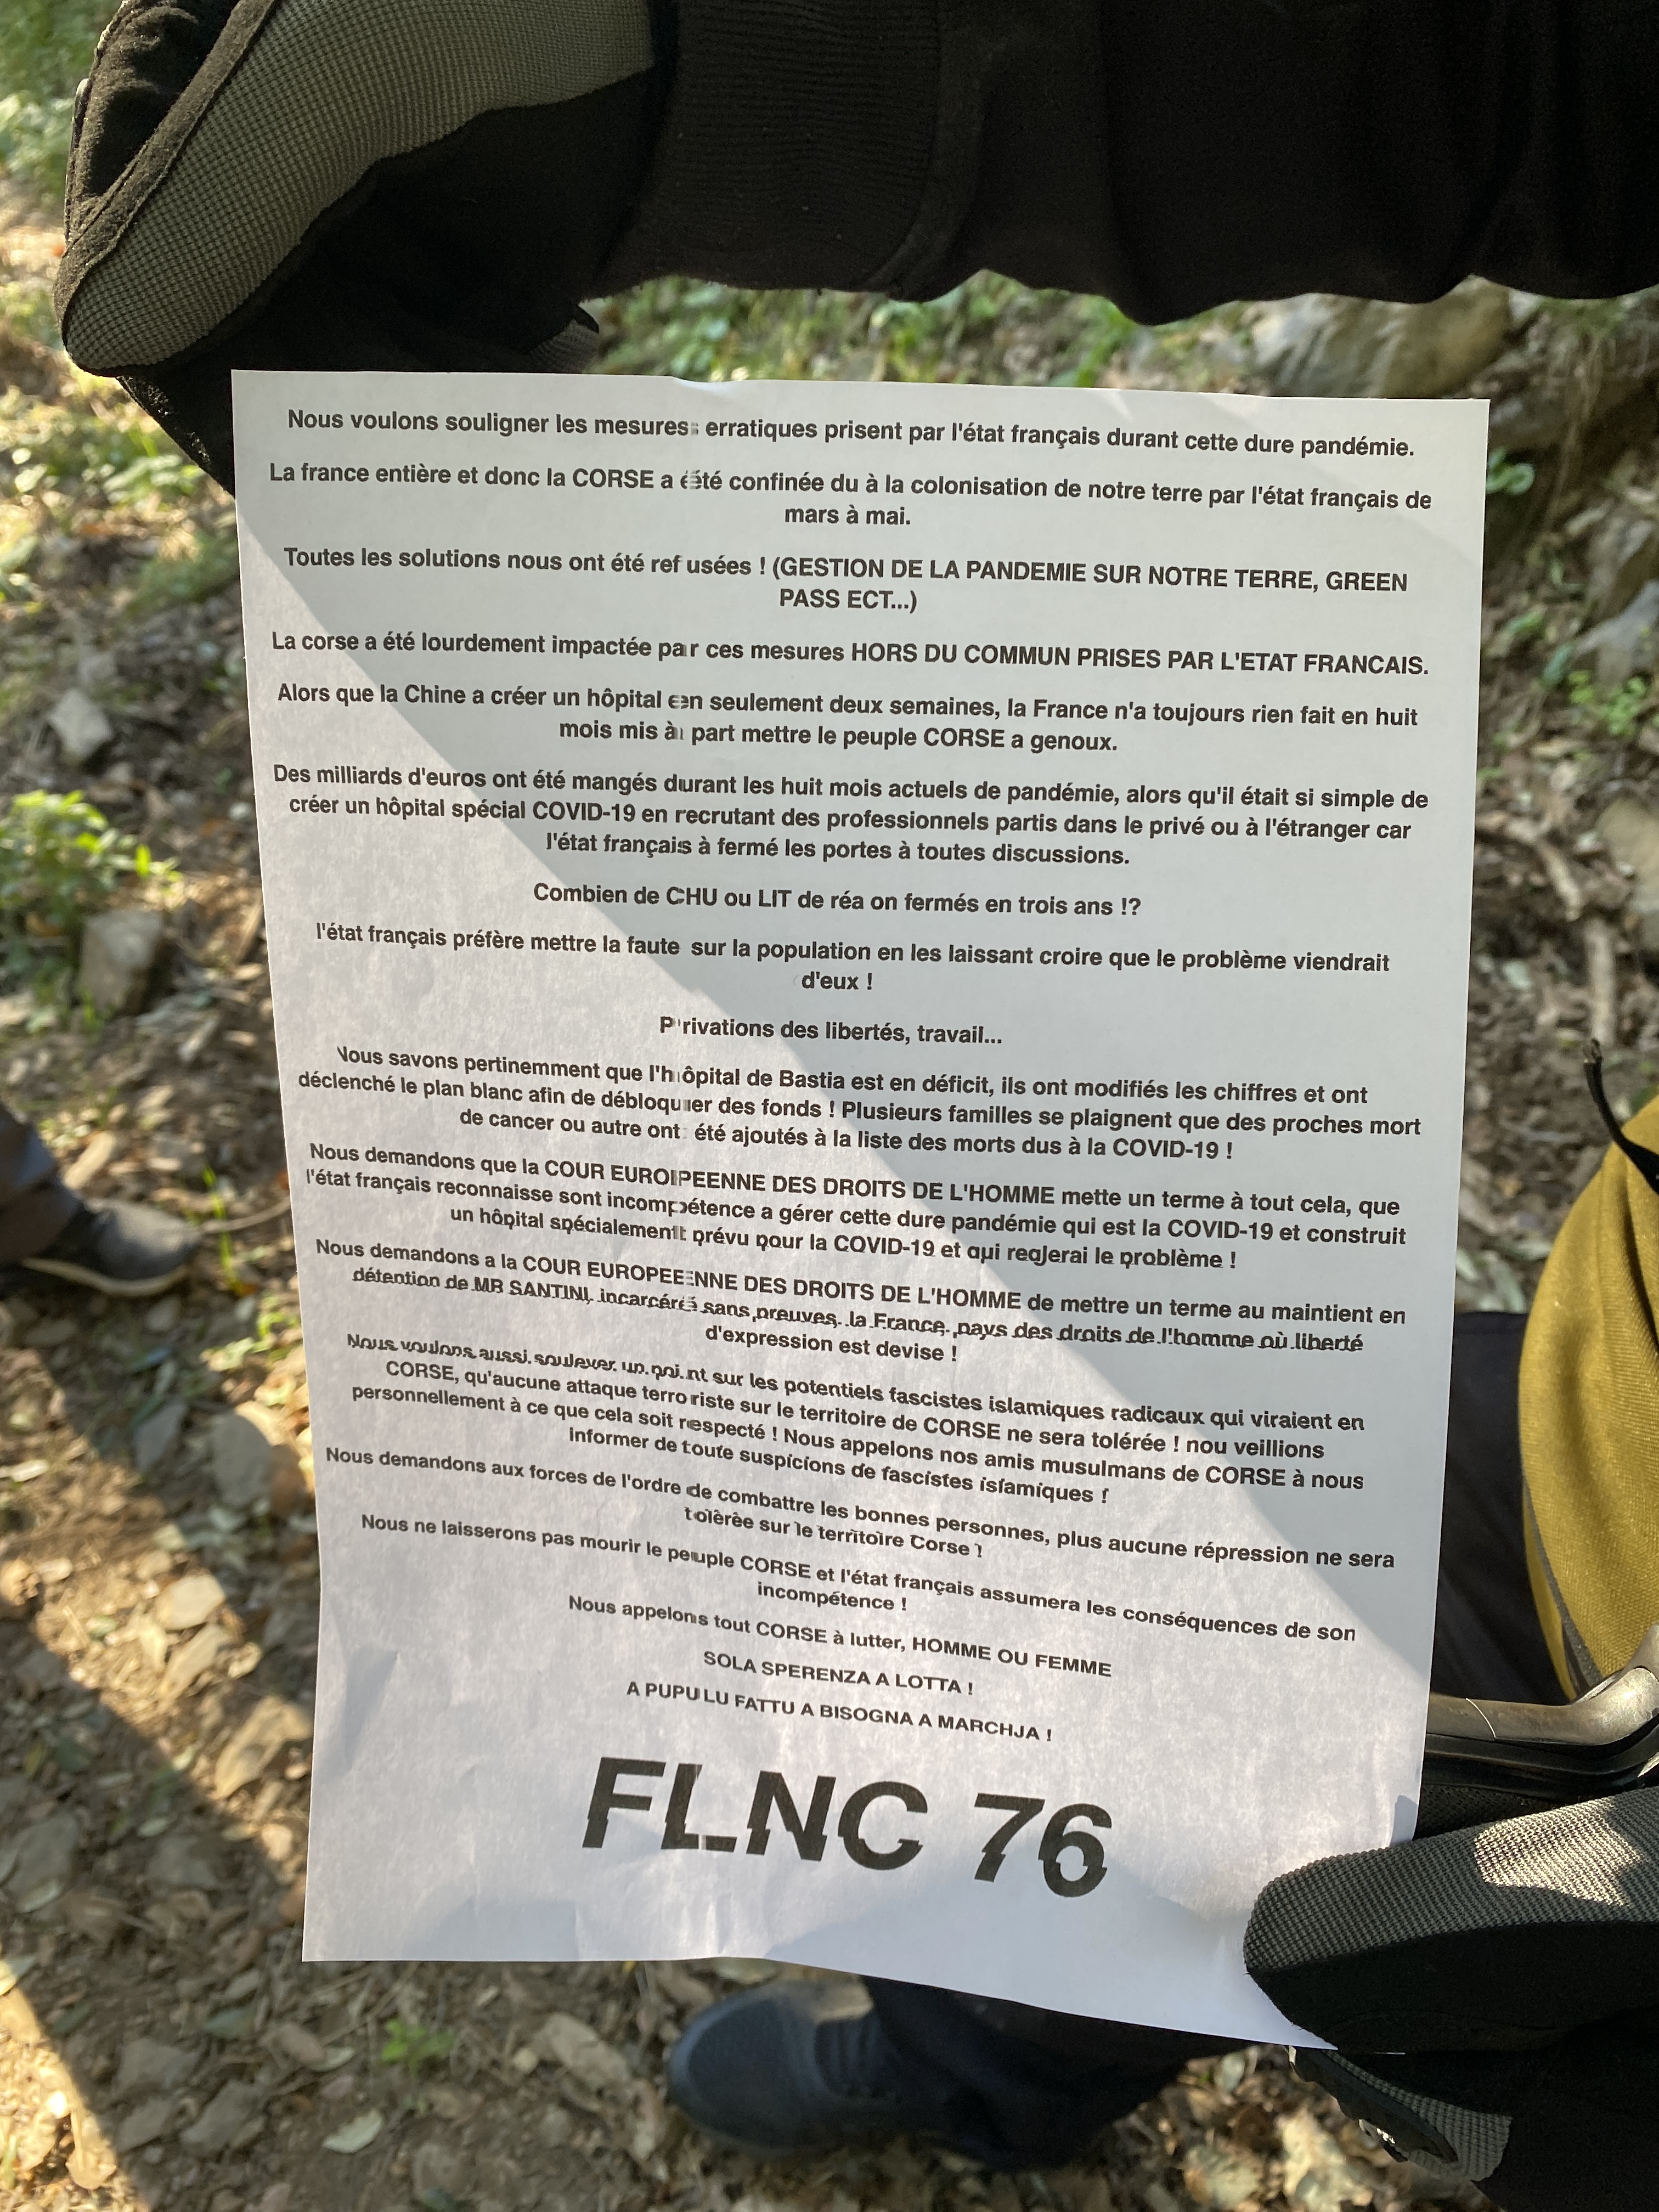 Le communiqué du FLNC 76